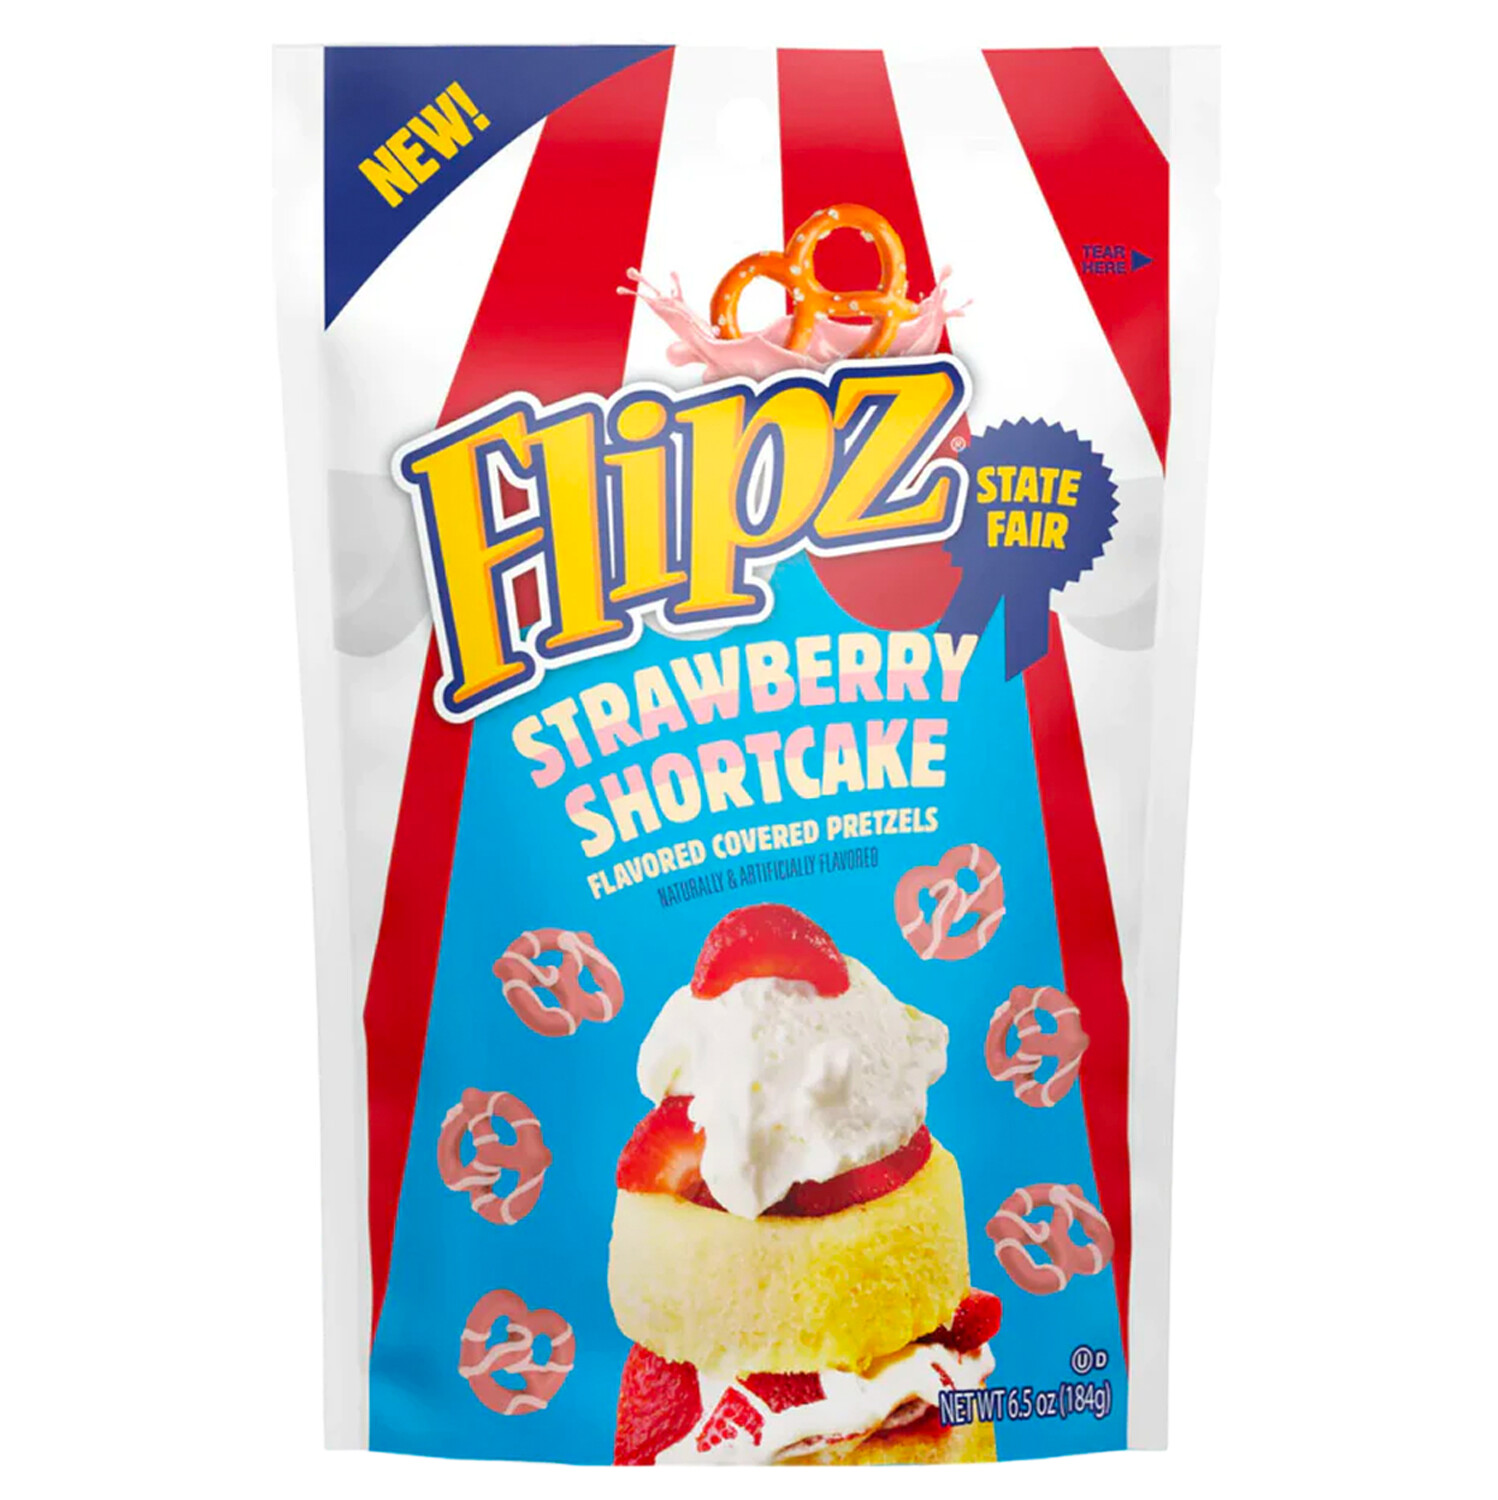 Flipz State Fair Strawberry Shortcake Flavoured Covered Pretzels